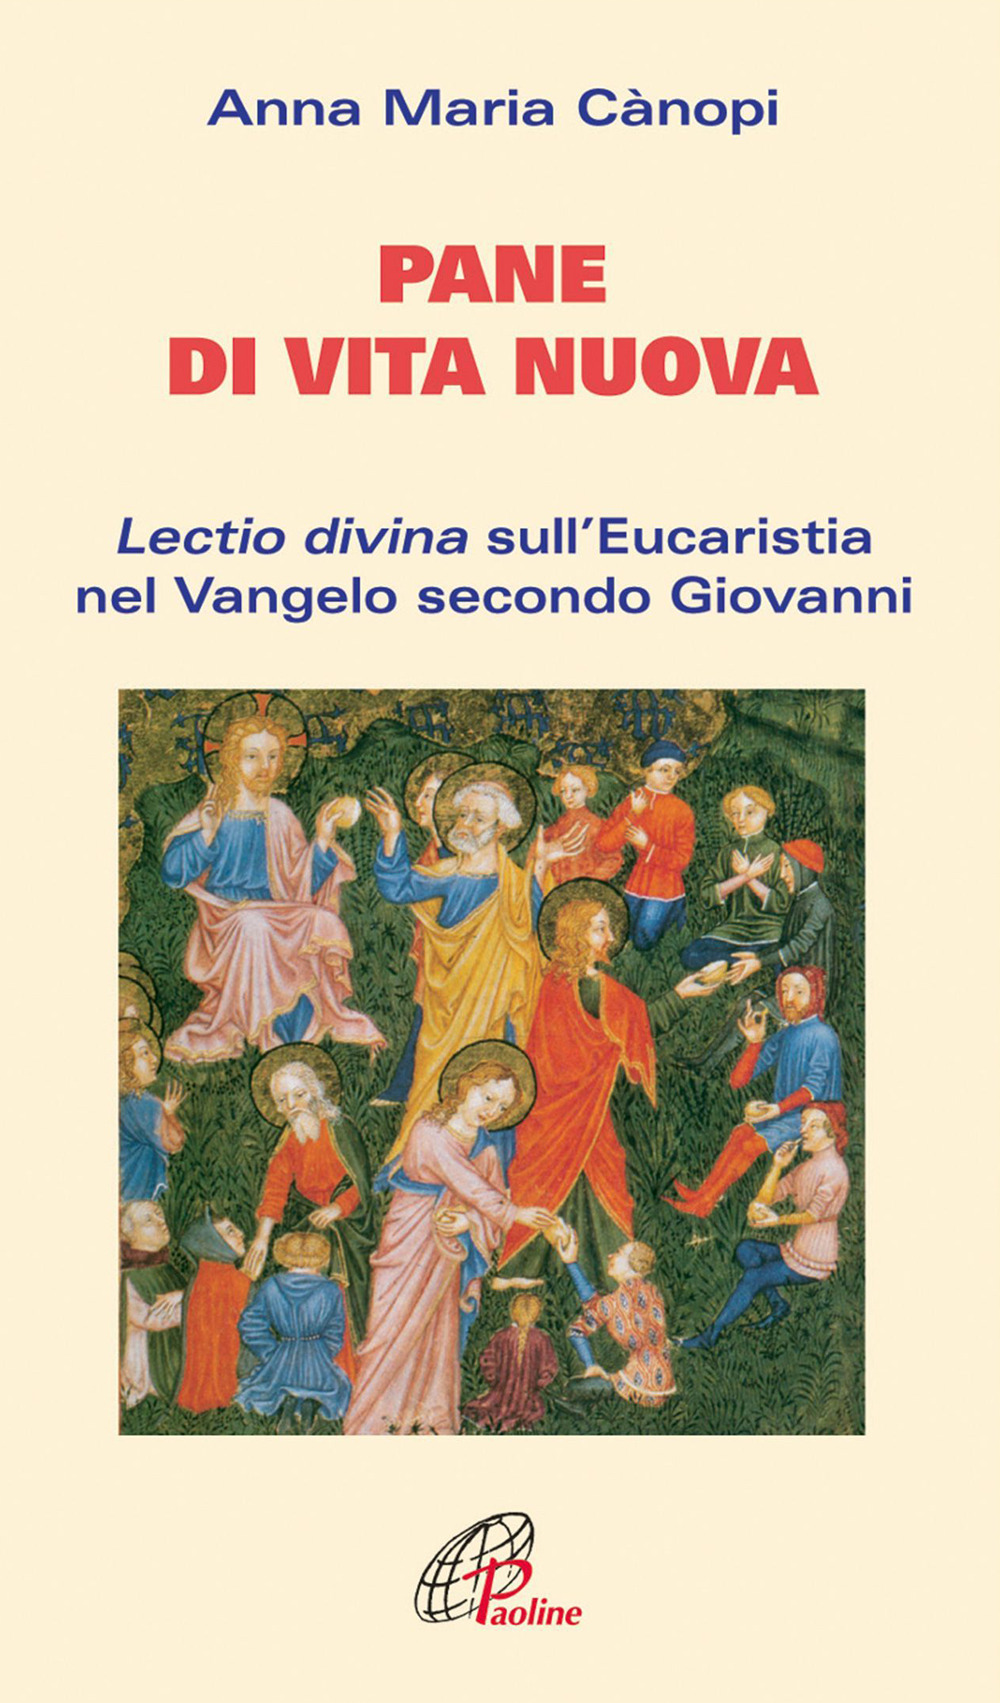 Image of Pane di vita nuova. Lectio divina sull'eucaristia nel Vangelo secondo Giovanni